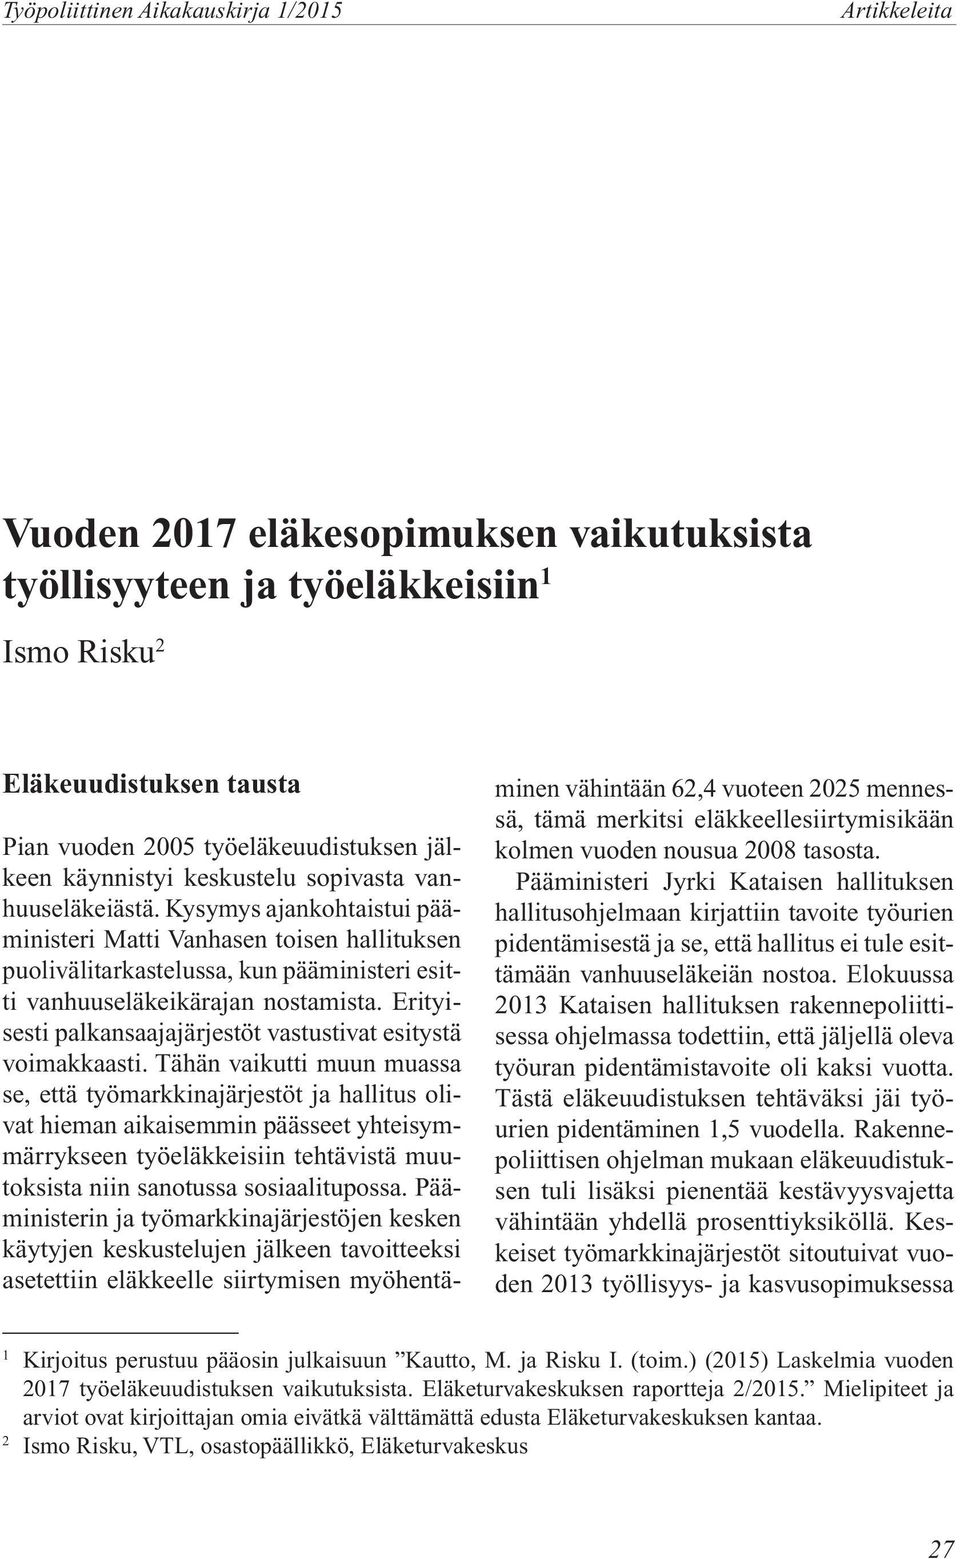 Kysymys ajankohtaistui pääministeri Matti Vanhasen toisen hallituksen puolivälitarkastelussa, kun pääministeri esitti vanhuuseläkeikärajan nostamista.